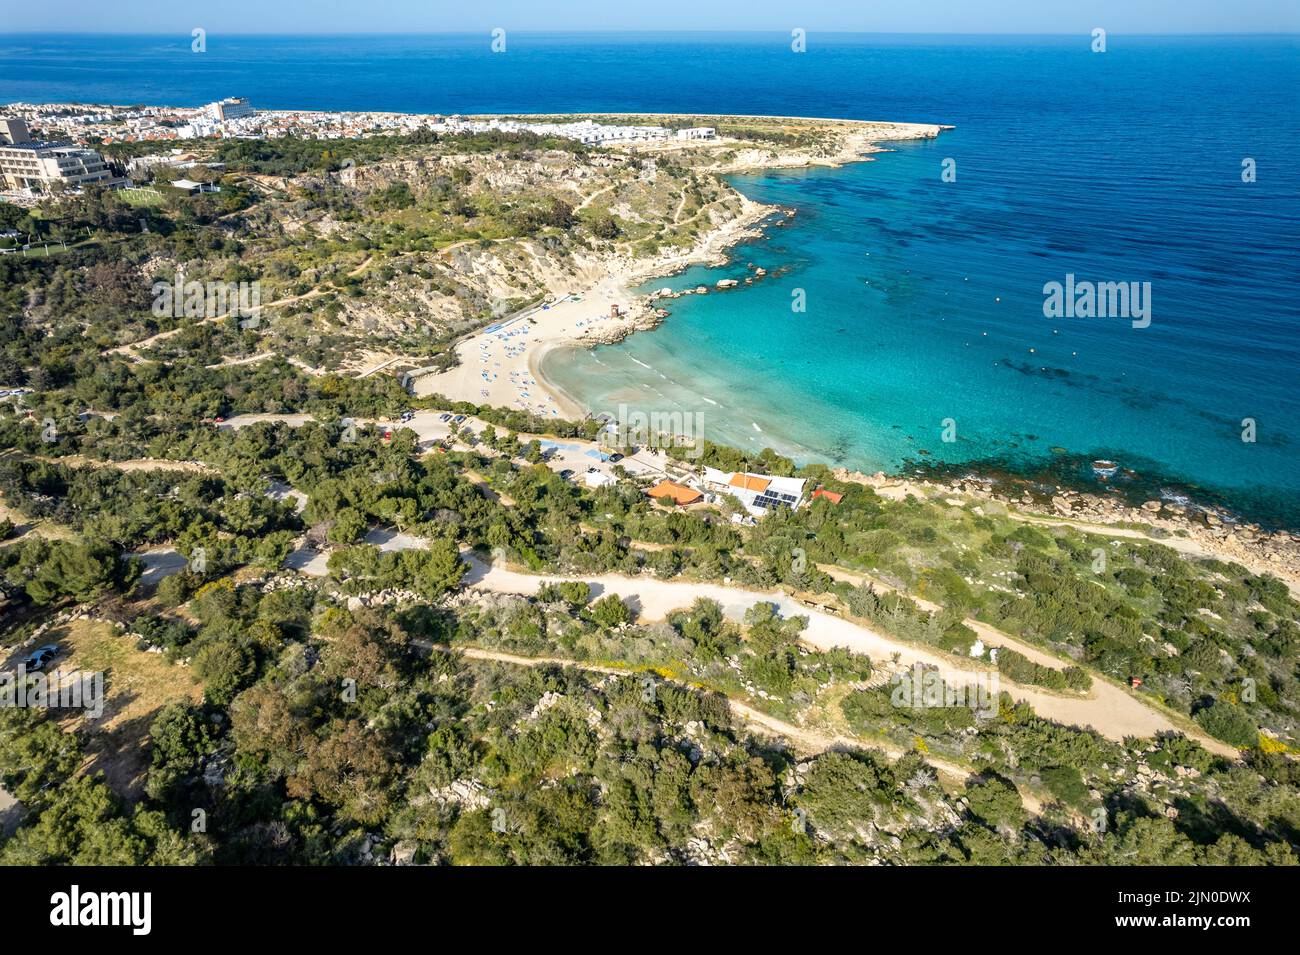 Plage de Konnos à Protaras aus der Luft gesehen, Zypern, Europa | vue aérienne de la plage de Konnos à Protaras, Chypre, Europe Banque D'Images